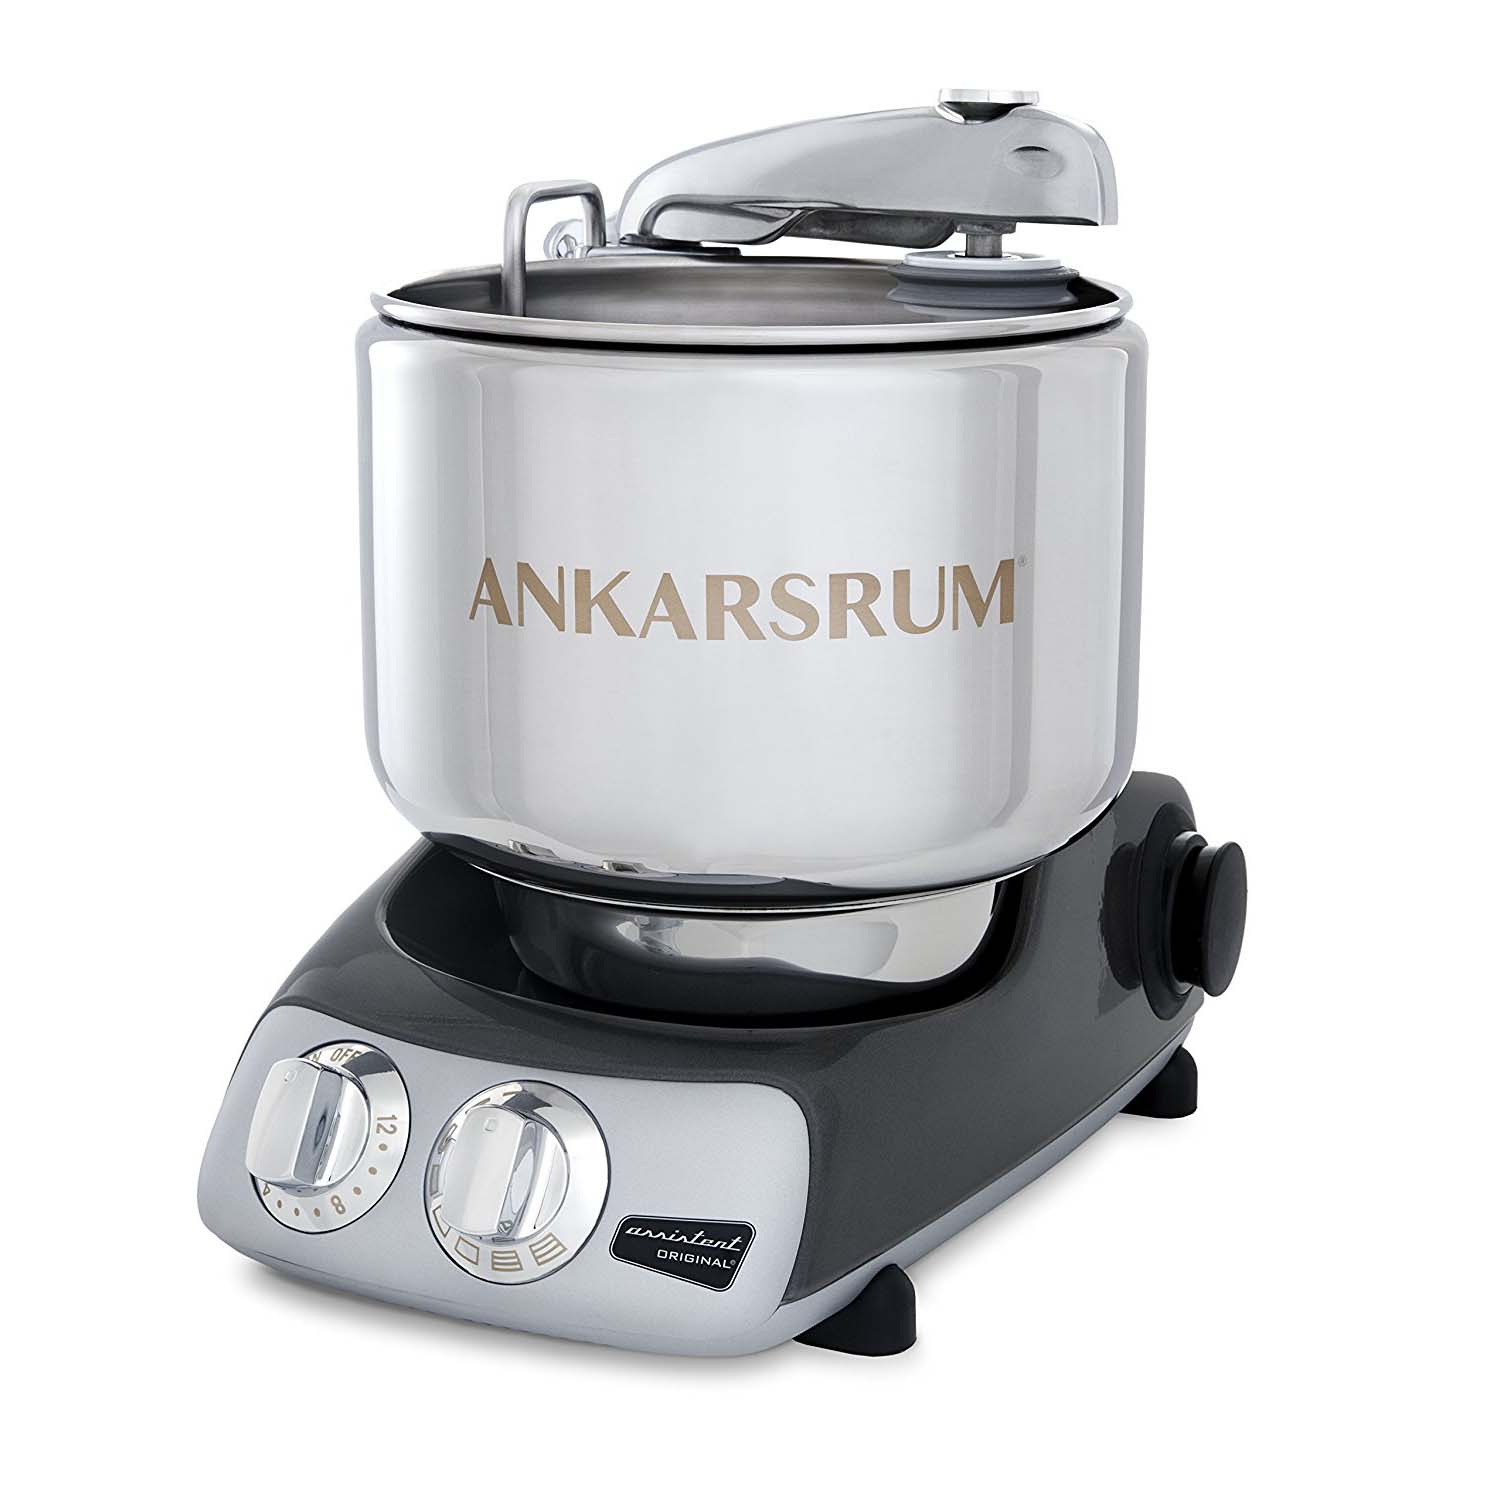 Ankarsrum Stand Mixer Attachment | Cookie Extruder